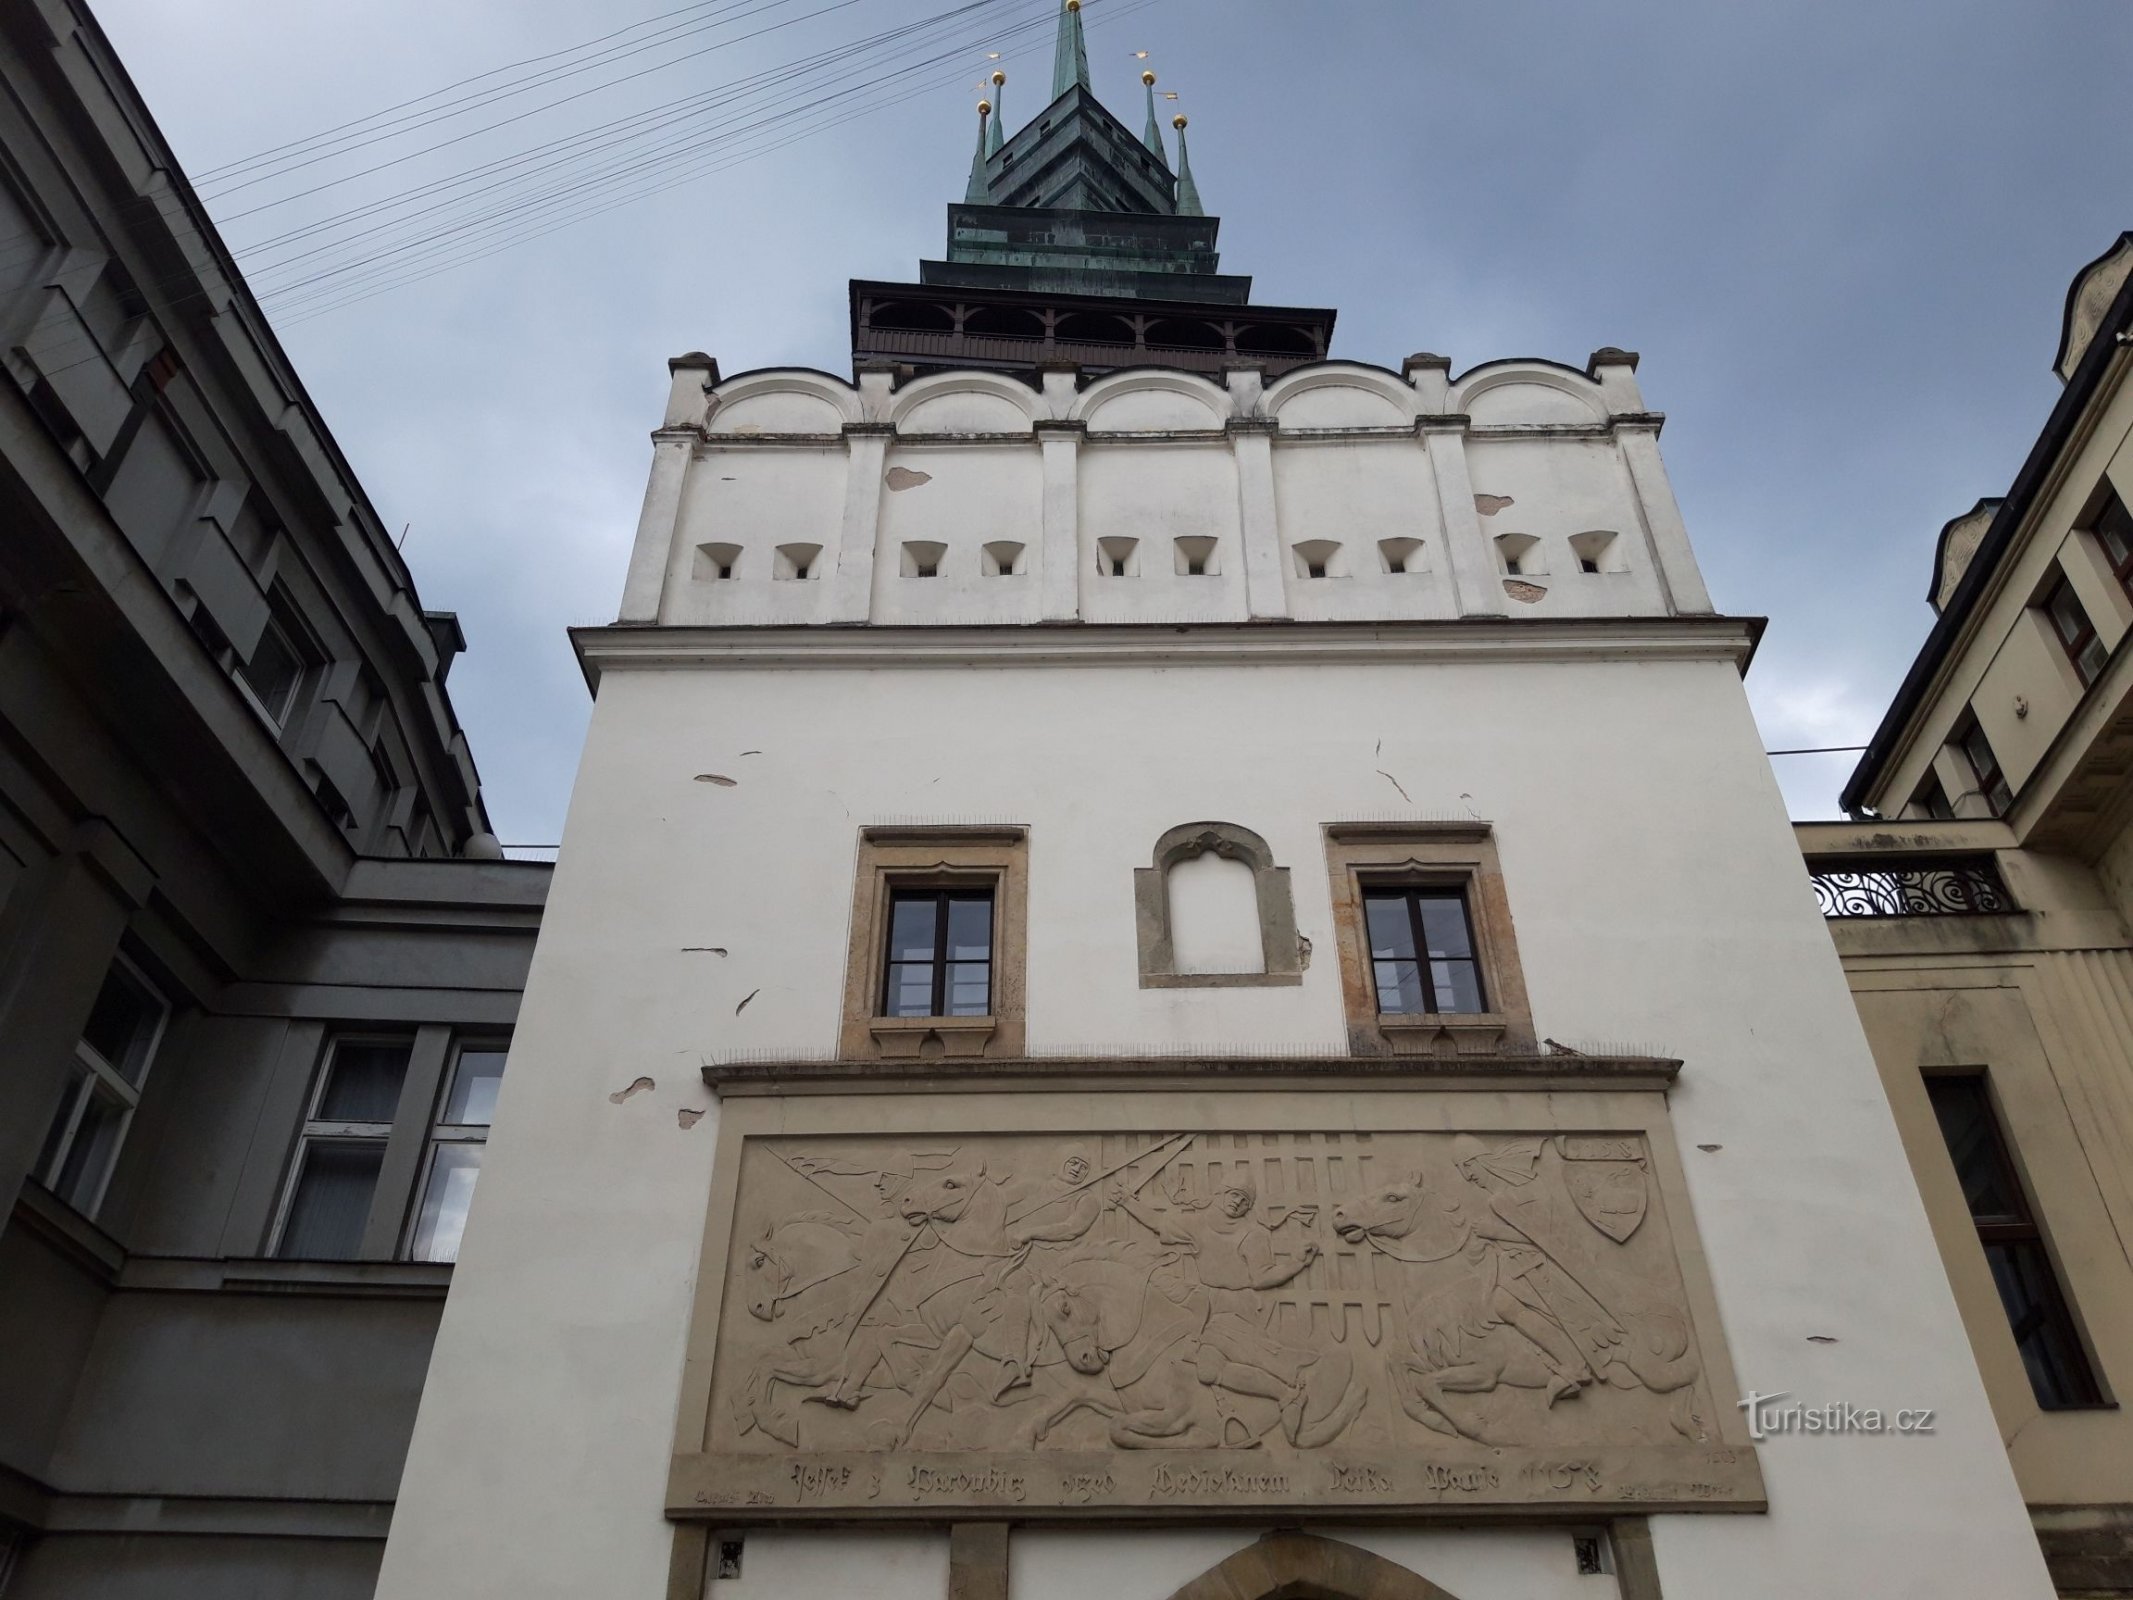 Puerta verde y torre de observación en Pardubice